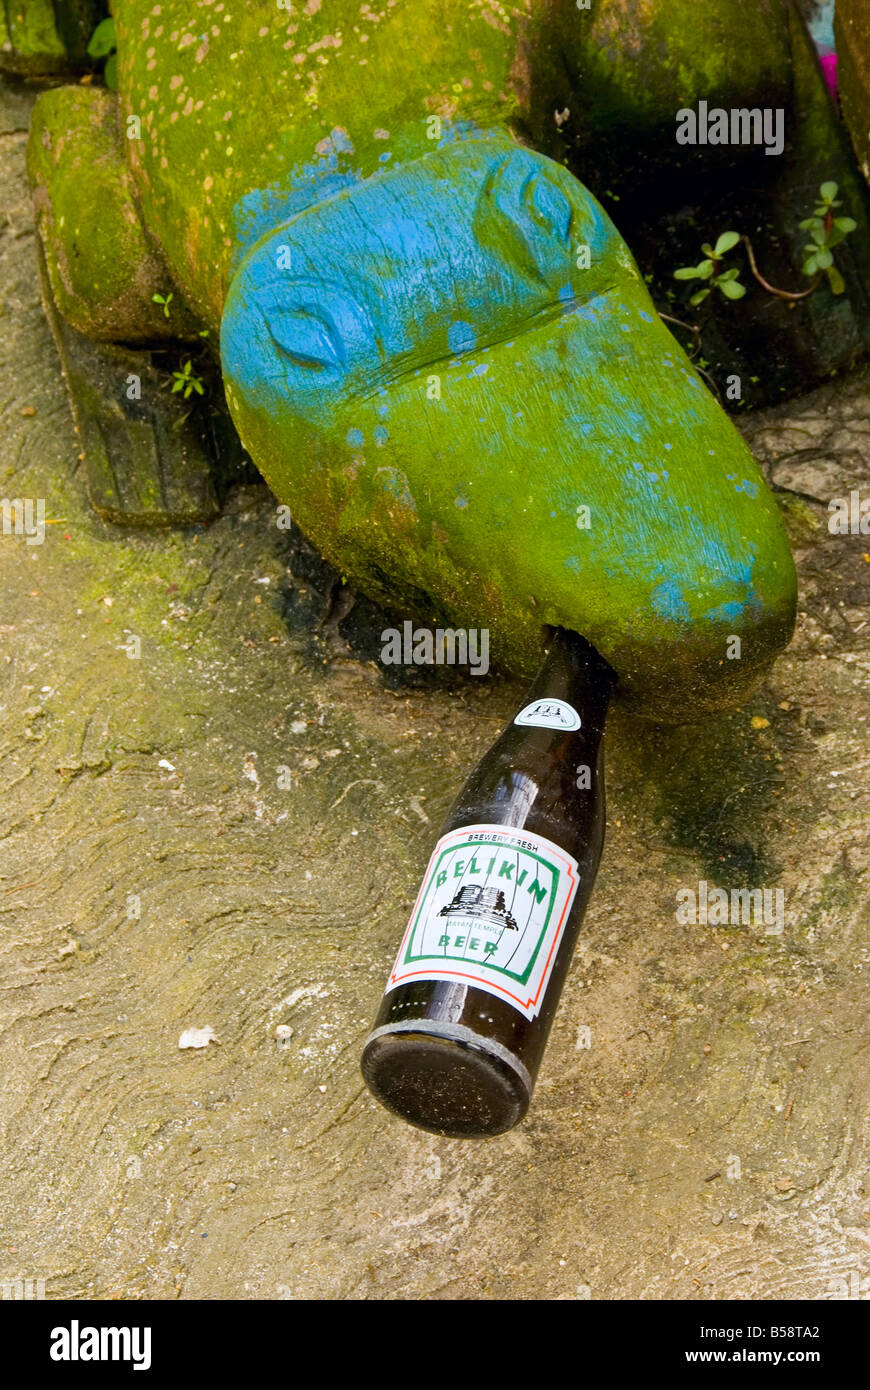 Belize City Green stone blue alligator bouteille bière locale Belikin les yeux dans la bouche Humour Humour drôle drôle Banque D'Images